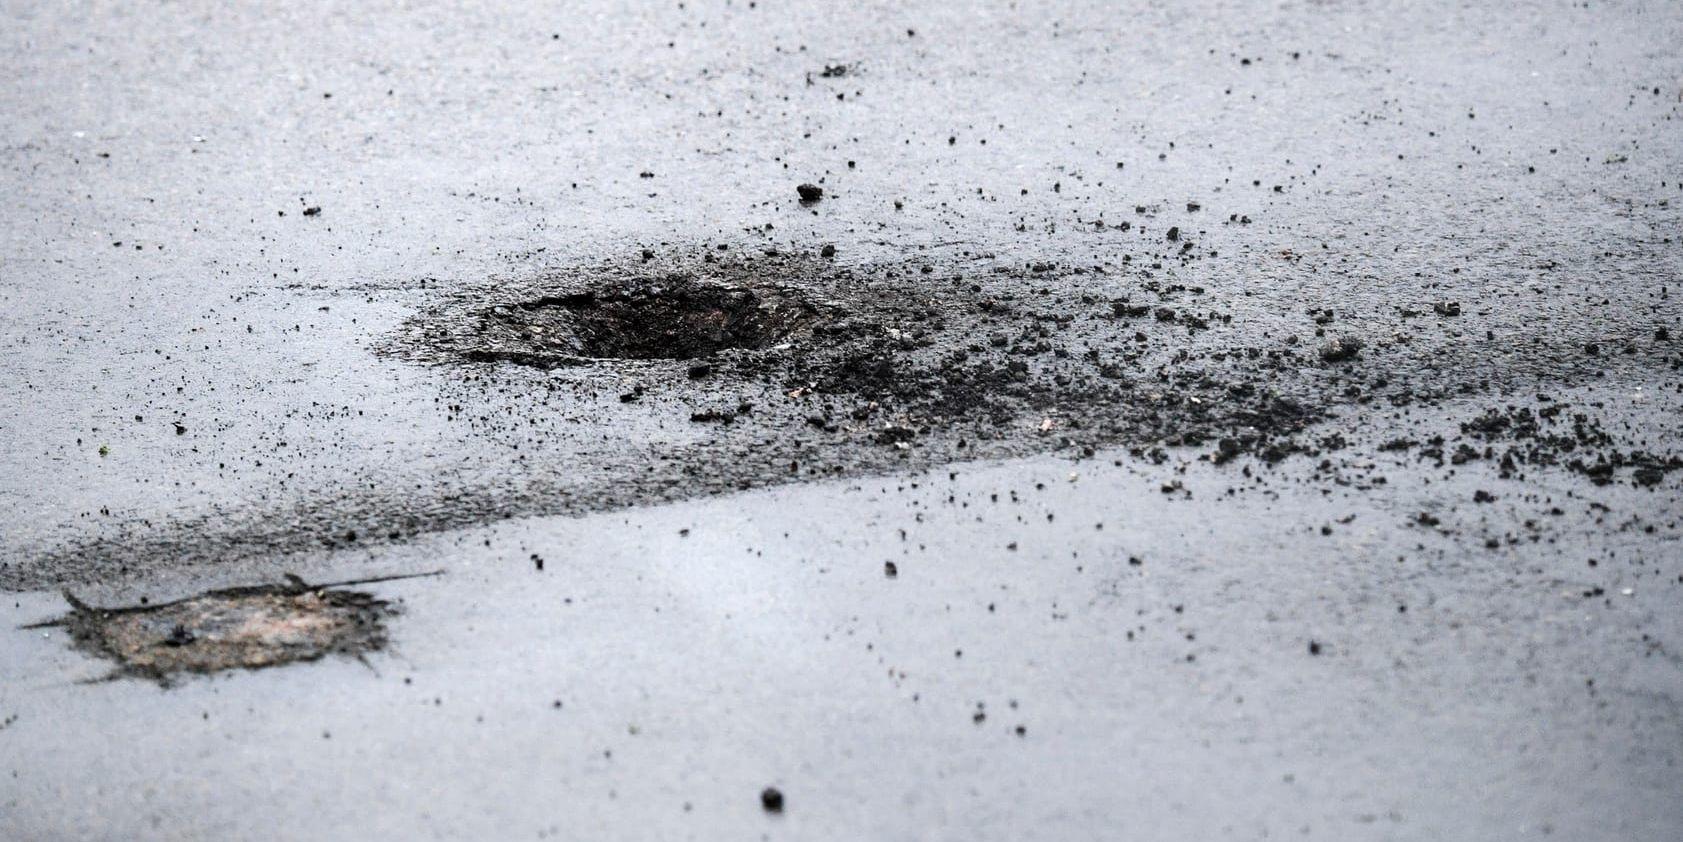 En krater bildades i asfalten av explosionen utanför polishuset i Rosengård i Malmö.